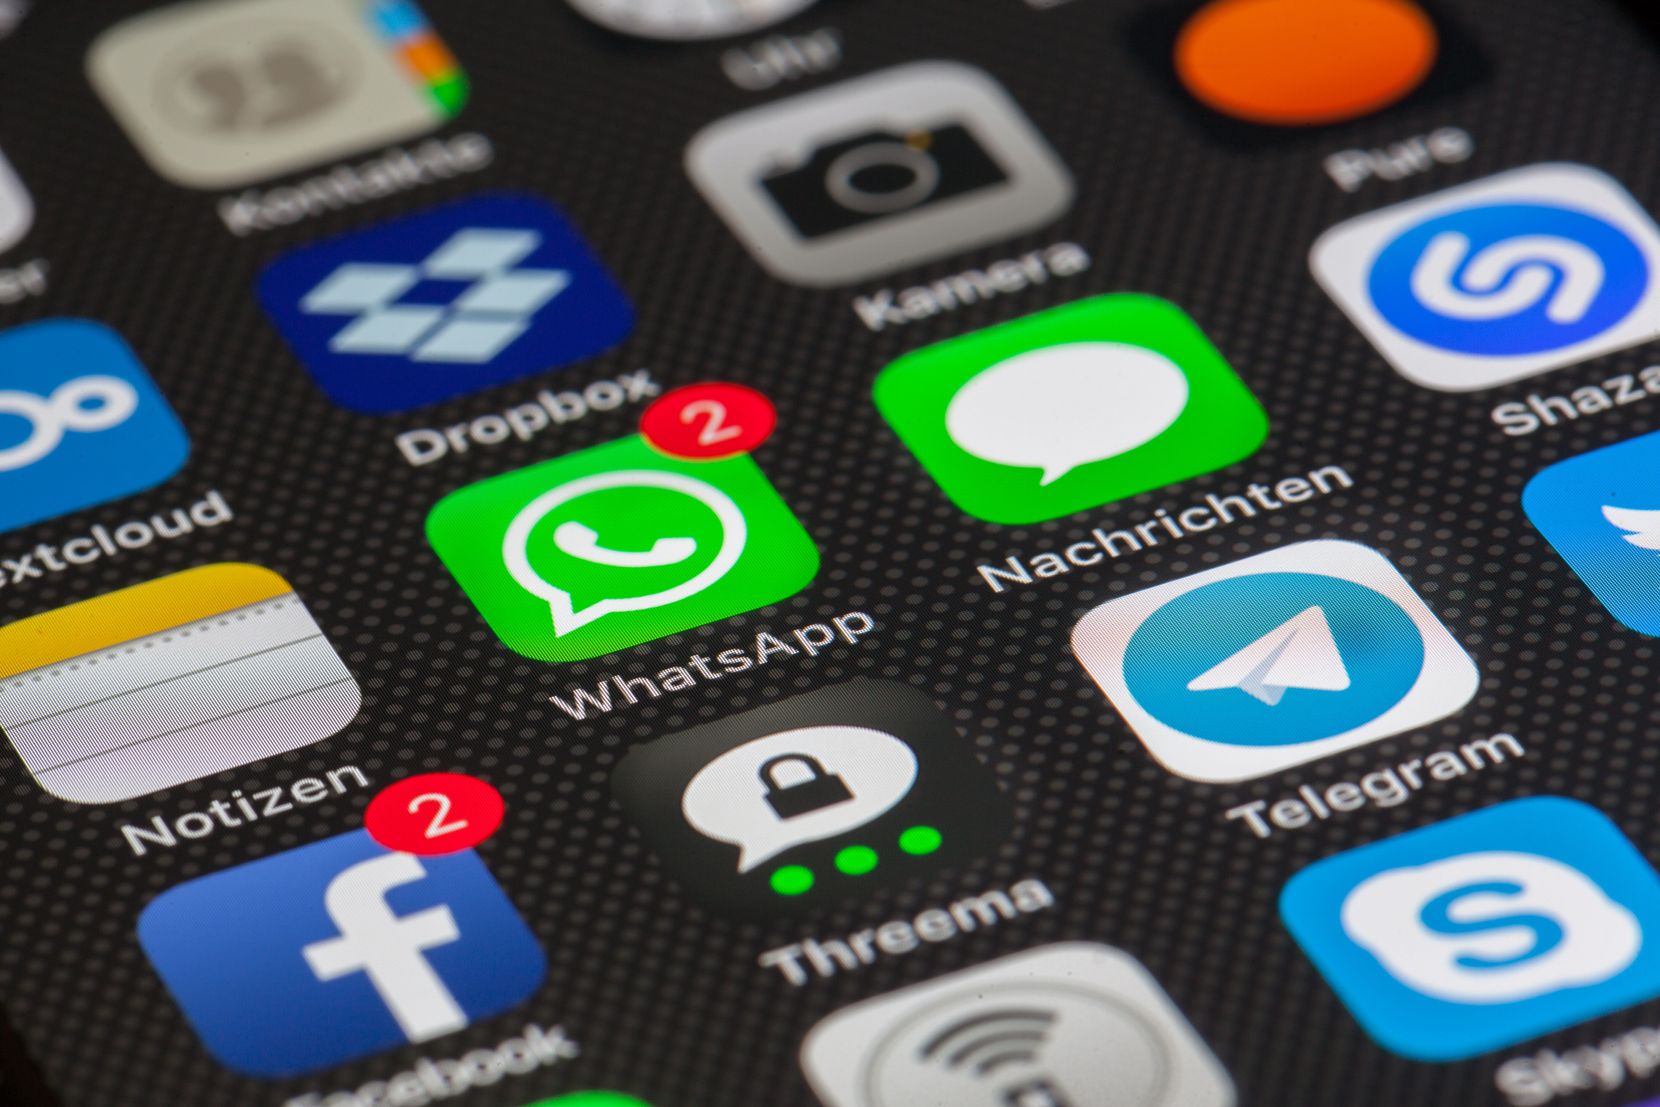 Ausschnitt eines Smartphone Bildschirms auf dem verschiedene Apps erkennbar sind, unter anderem Whatsapp, Facebook und Skype.